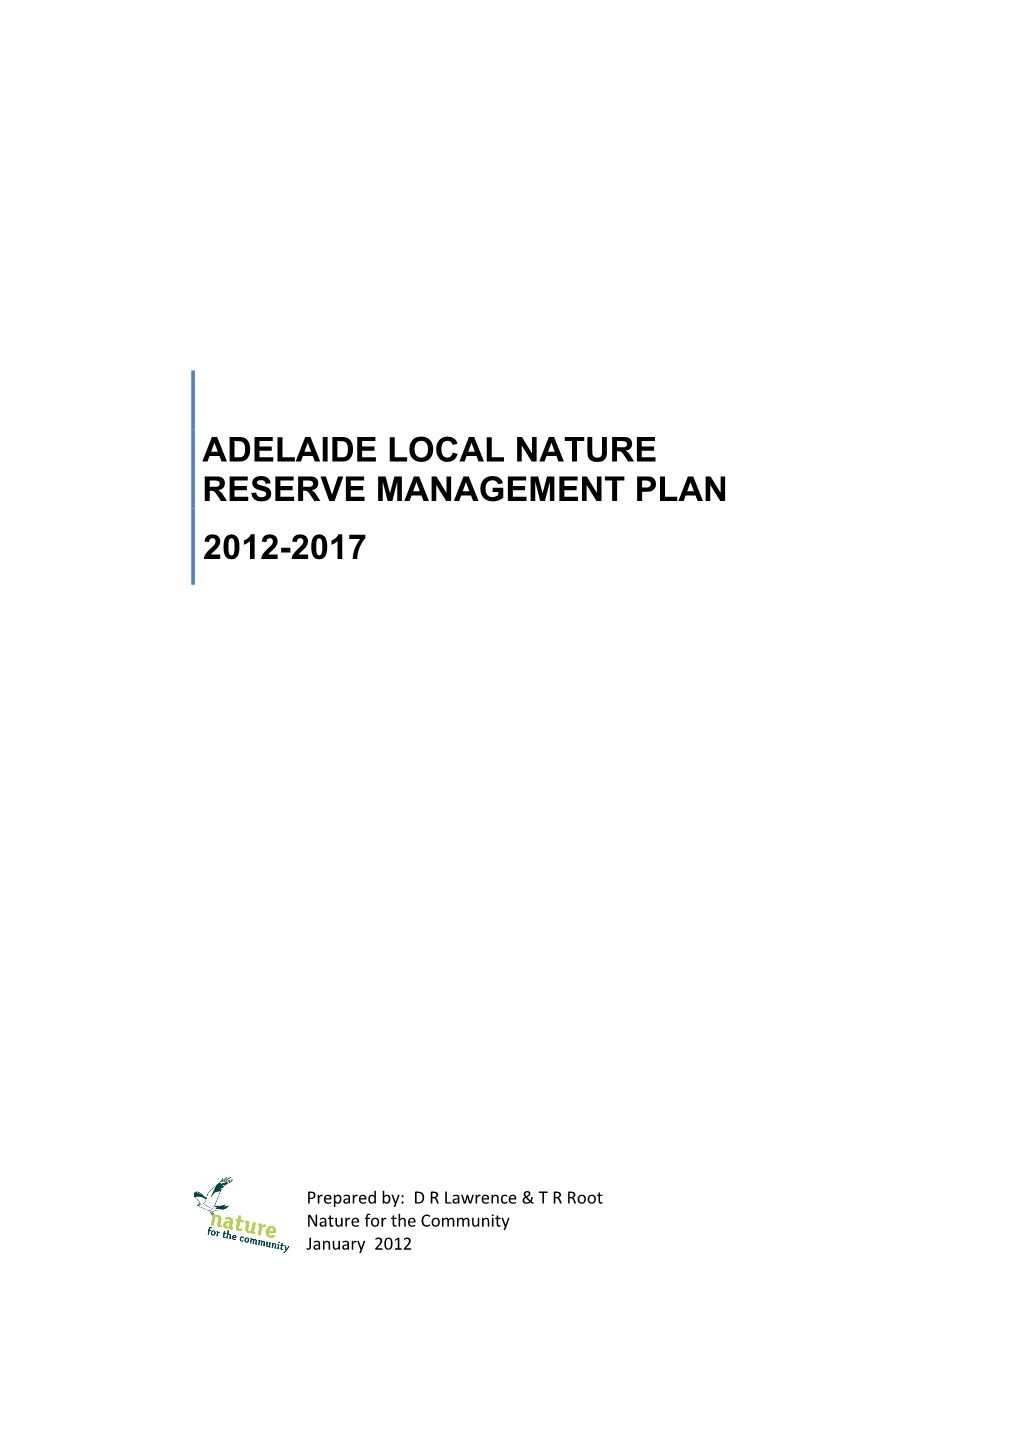 The Adelaide LNR Management Plan